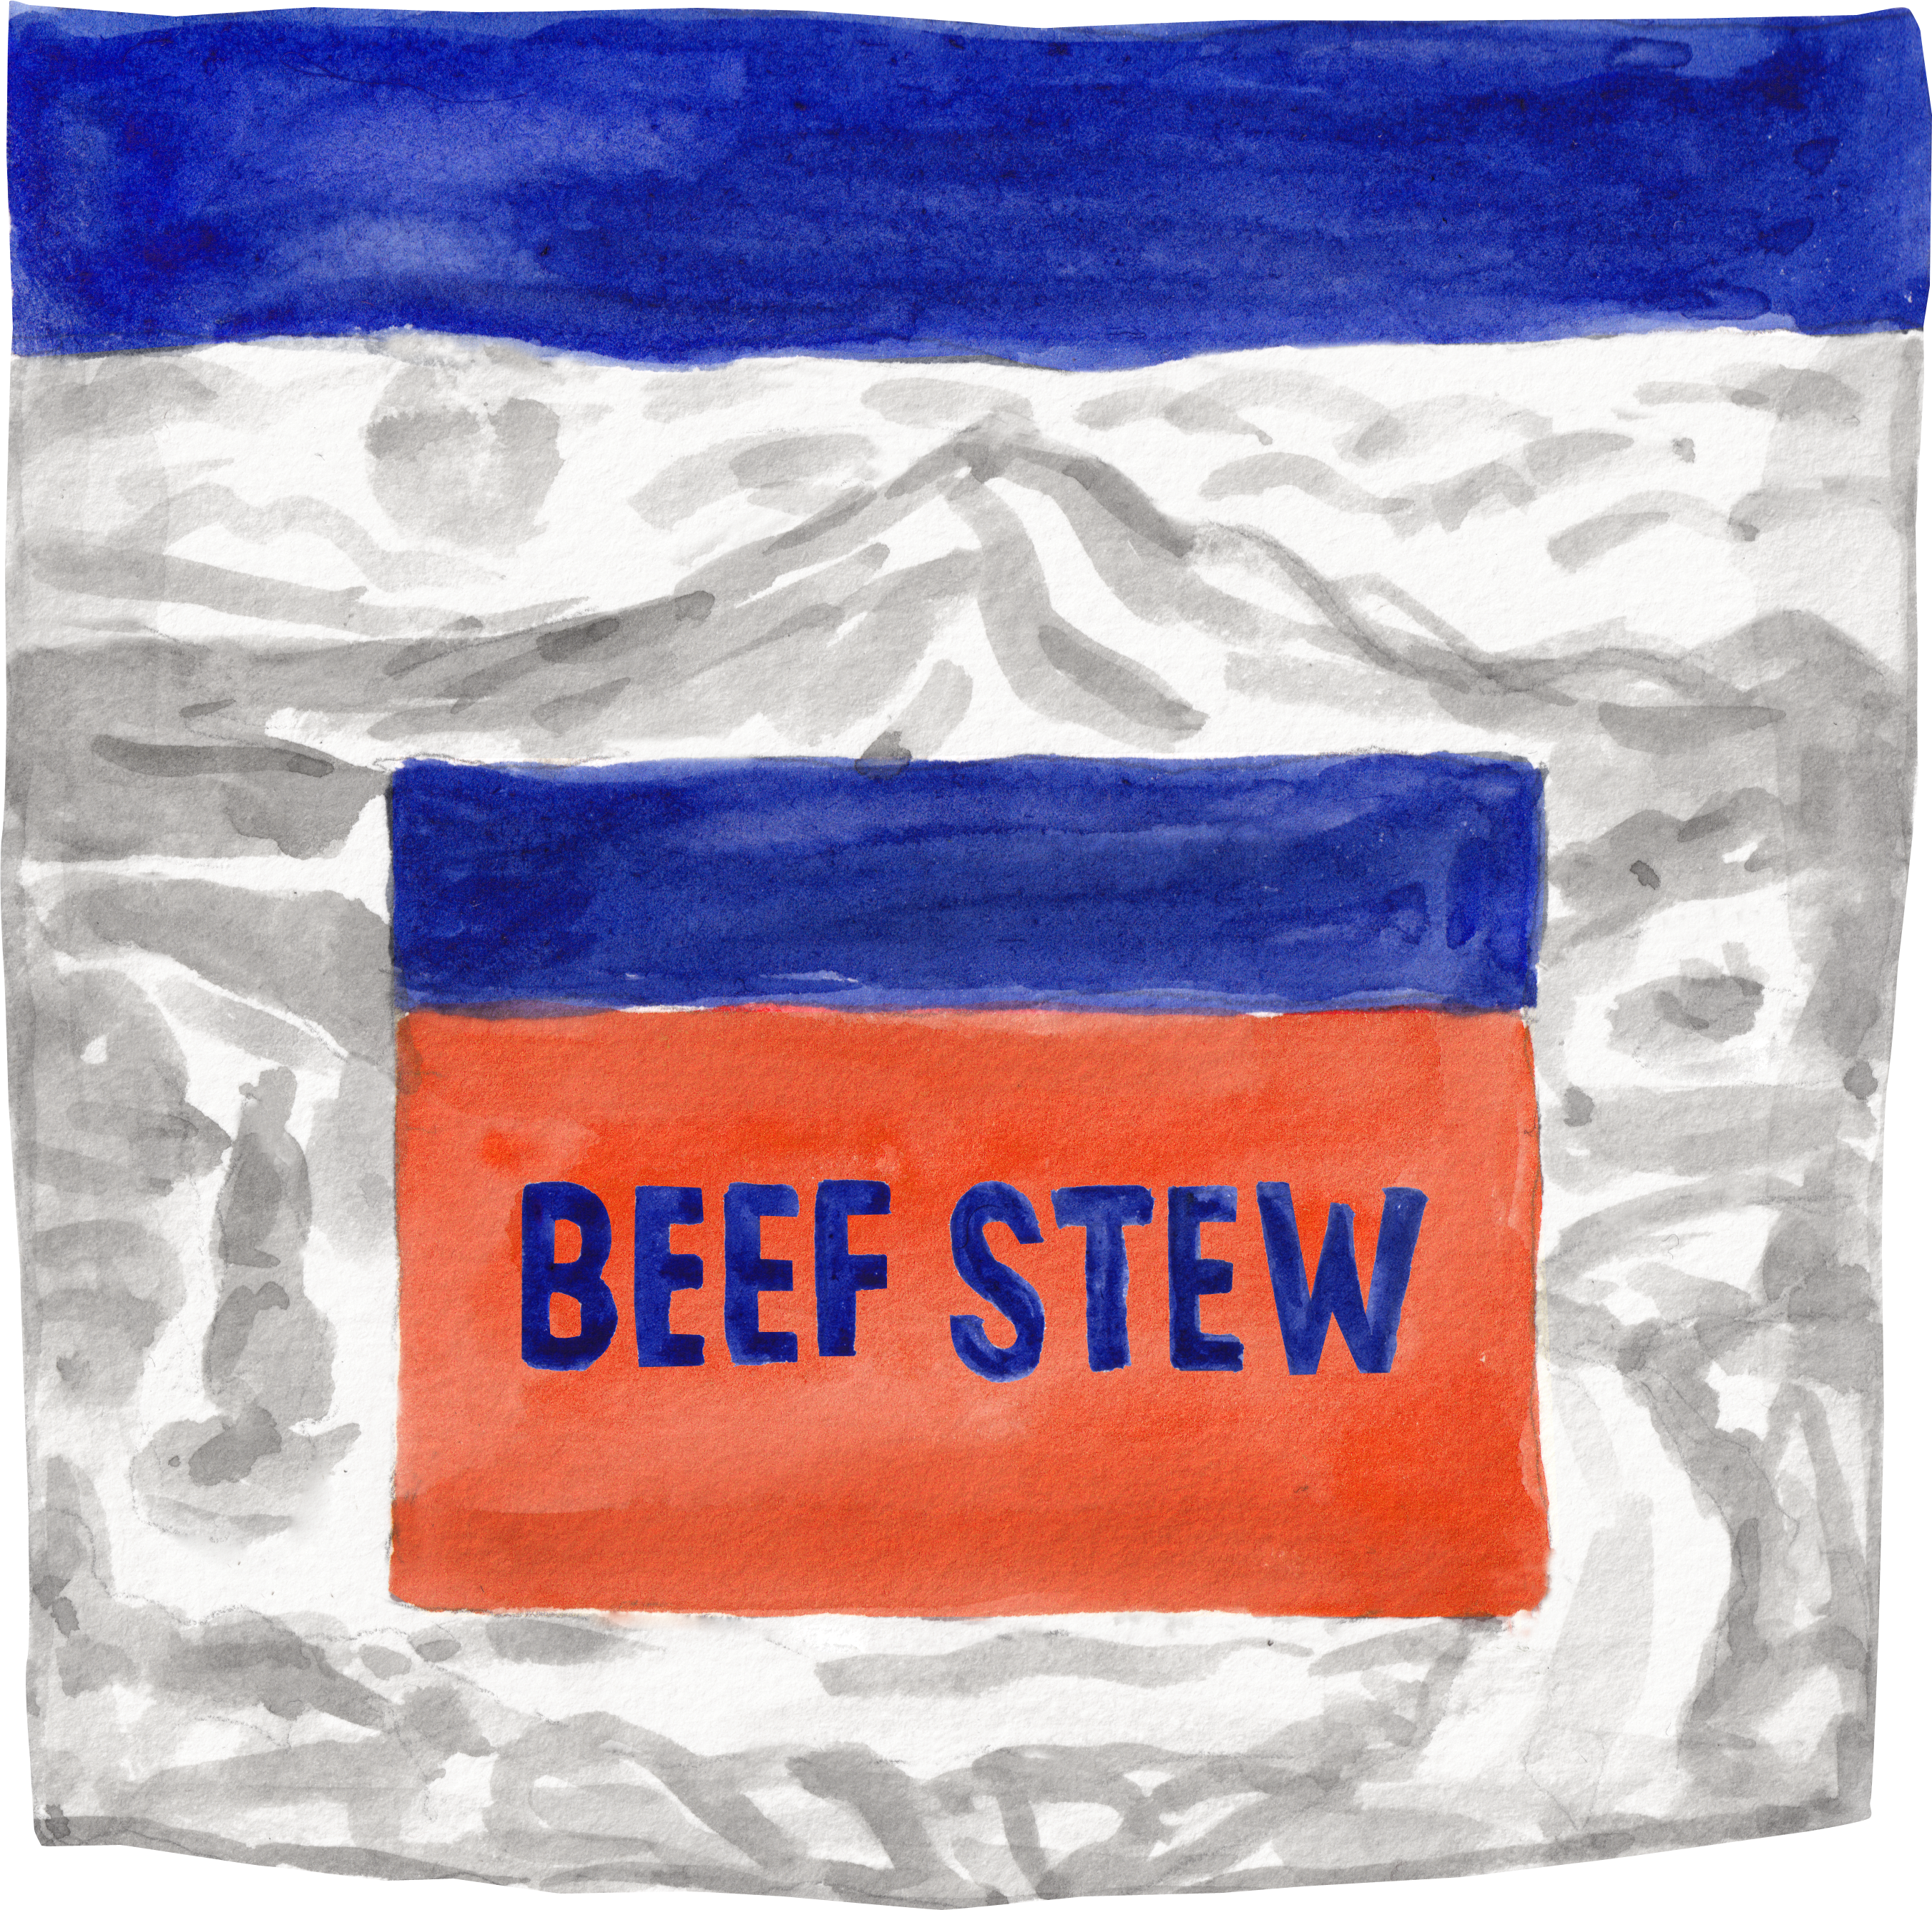 Beef stew emergency food